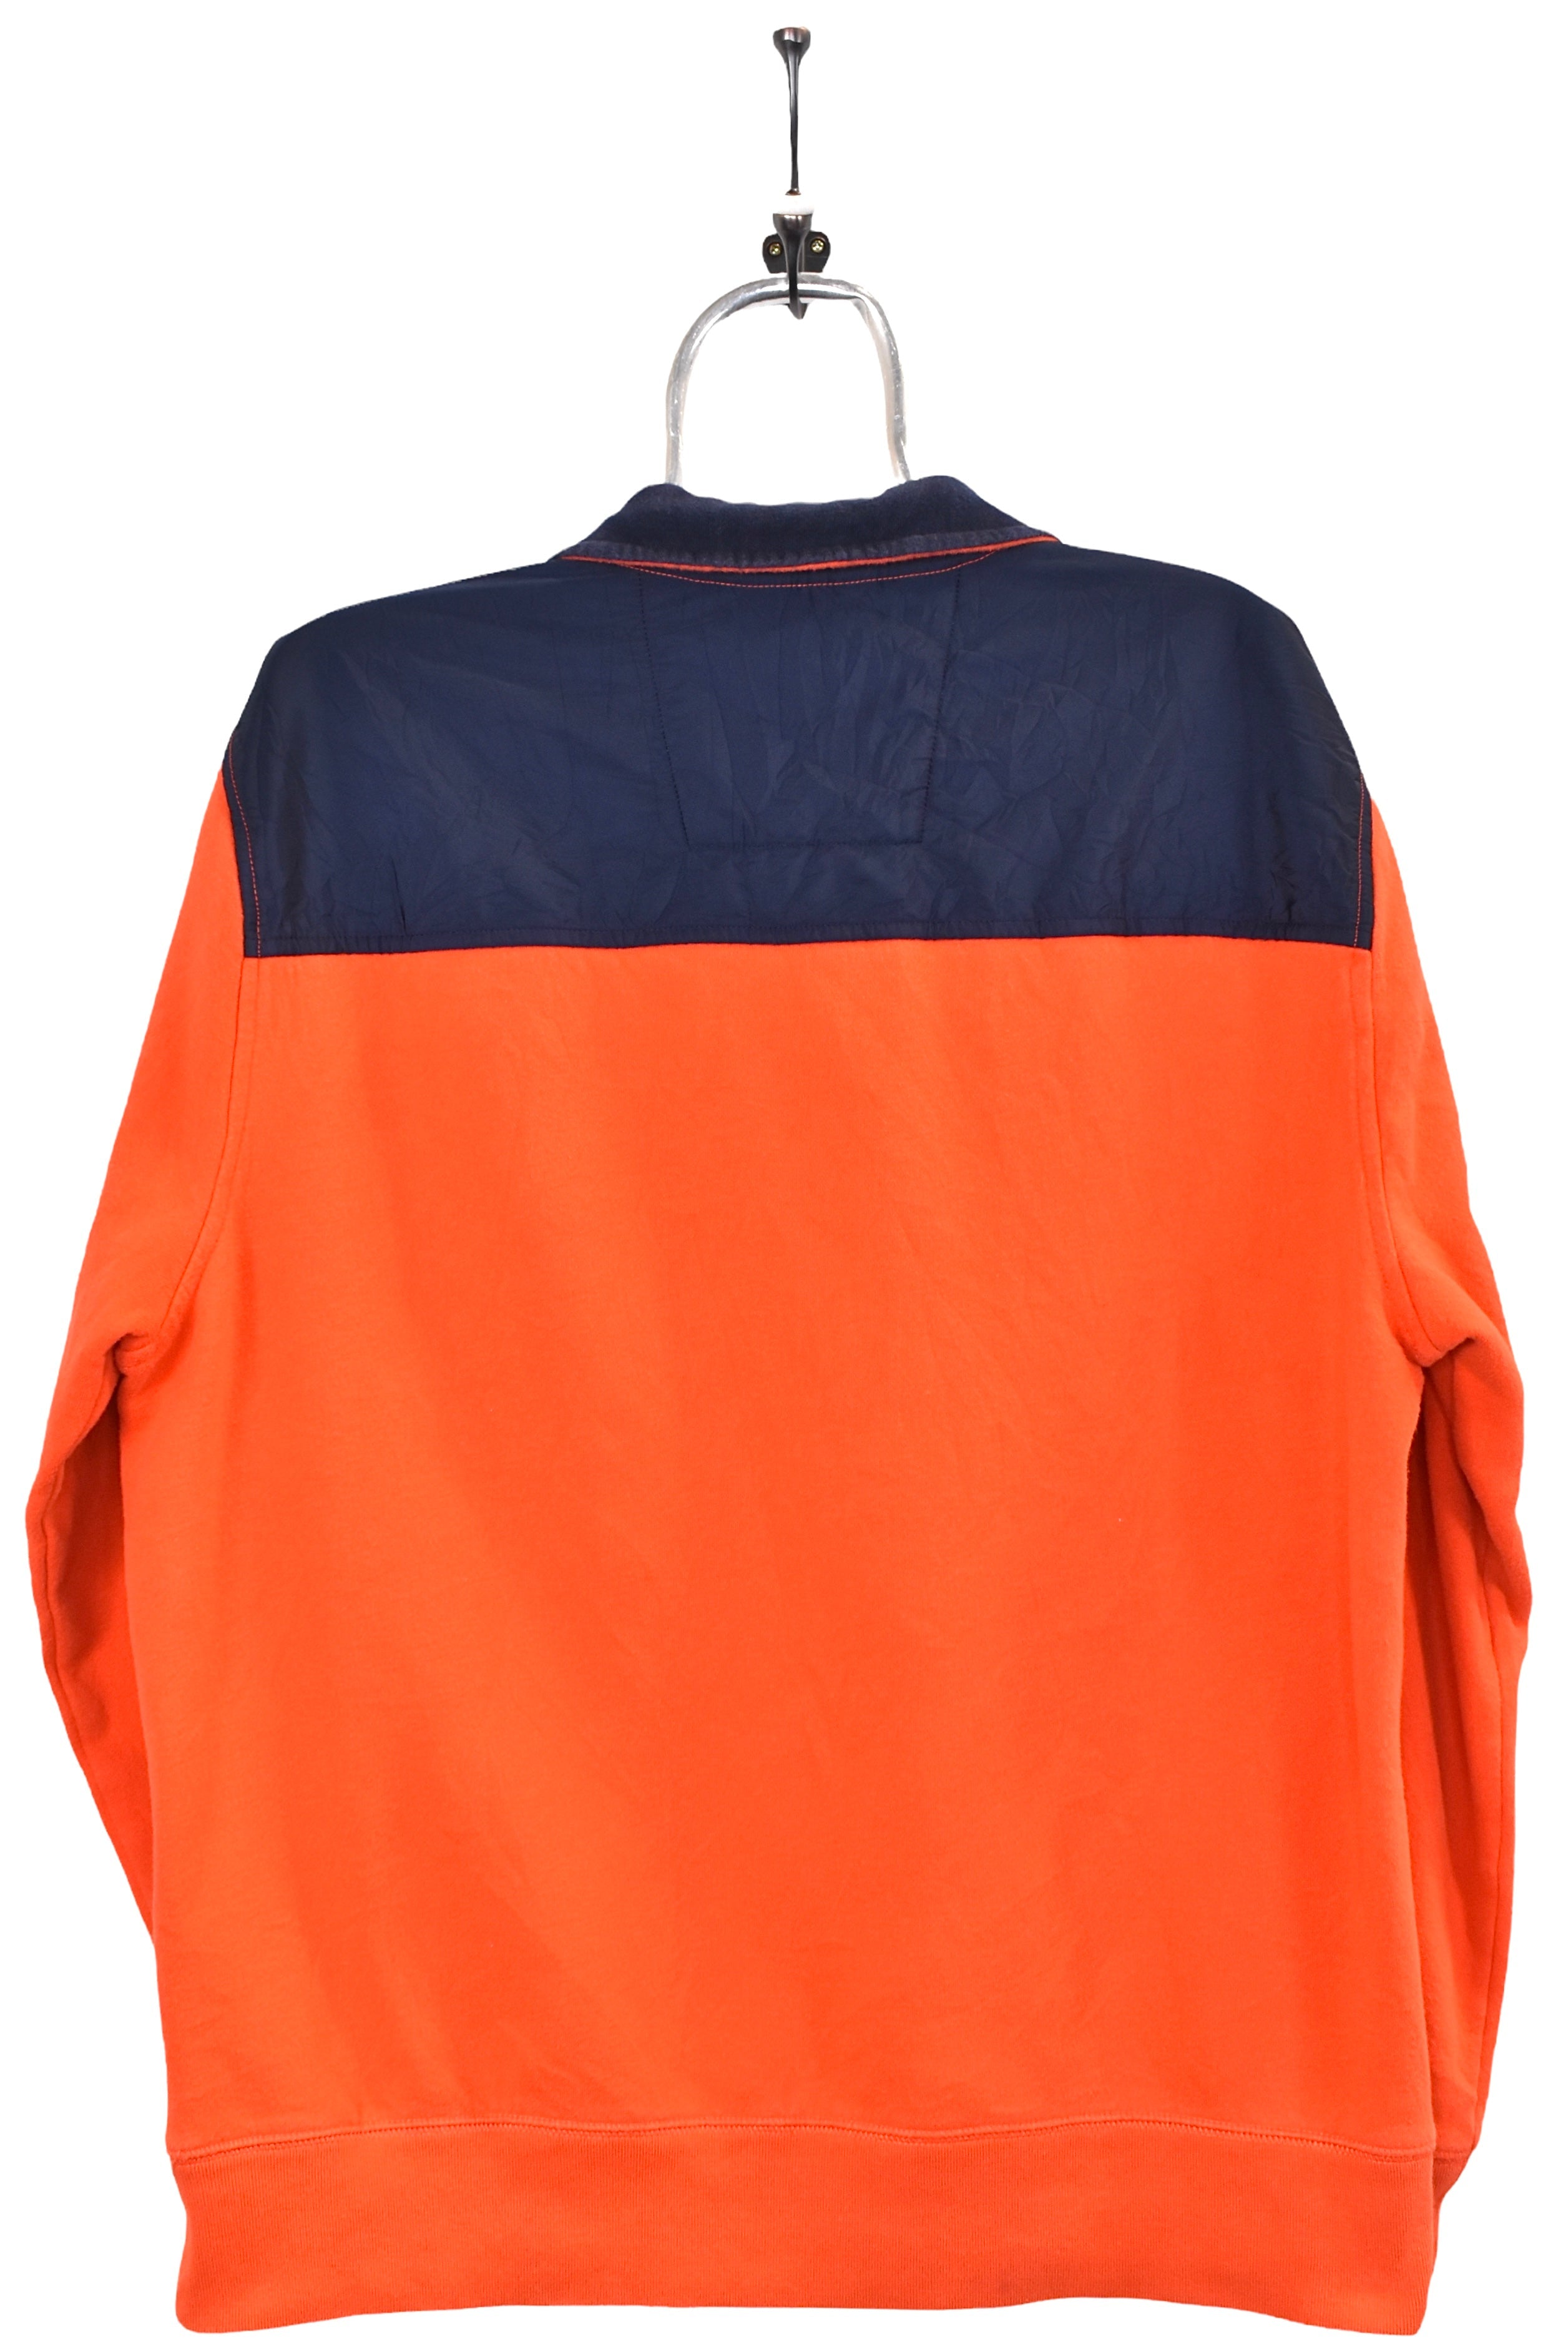 Vintage Nautica sweatshirt, orange embroidered 1/4 zip jumper - AU Large NAUTICA